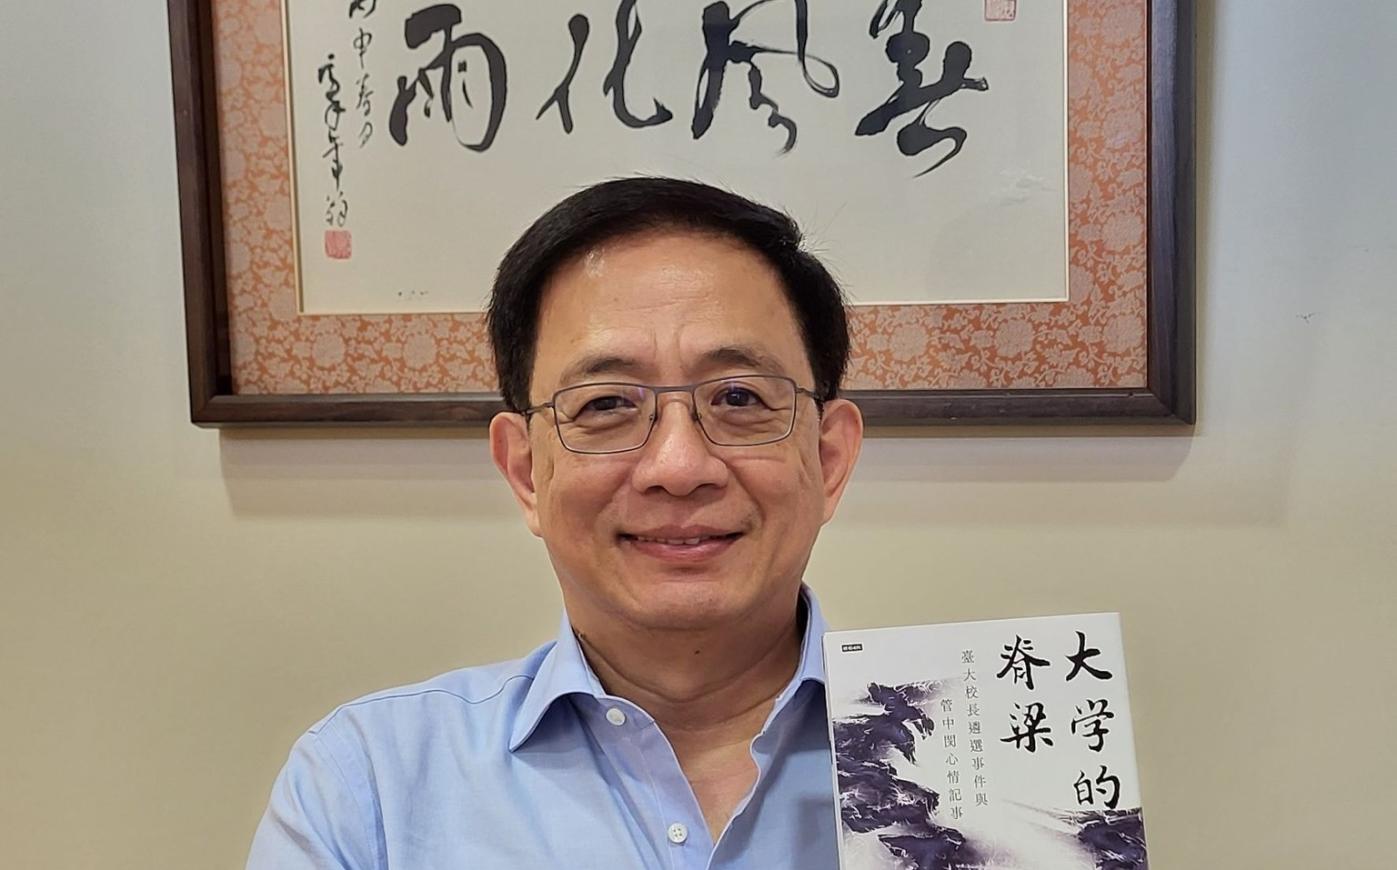 台灣大學前校長管中閔發表新書，揭露當年卡管案內幕。翻攝管中閔臉書